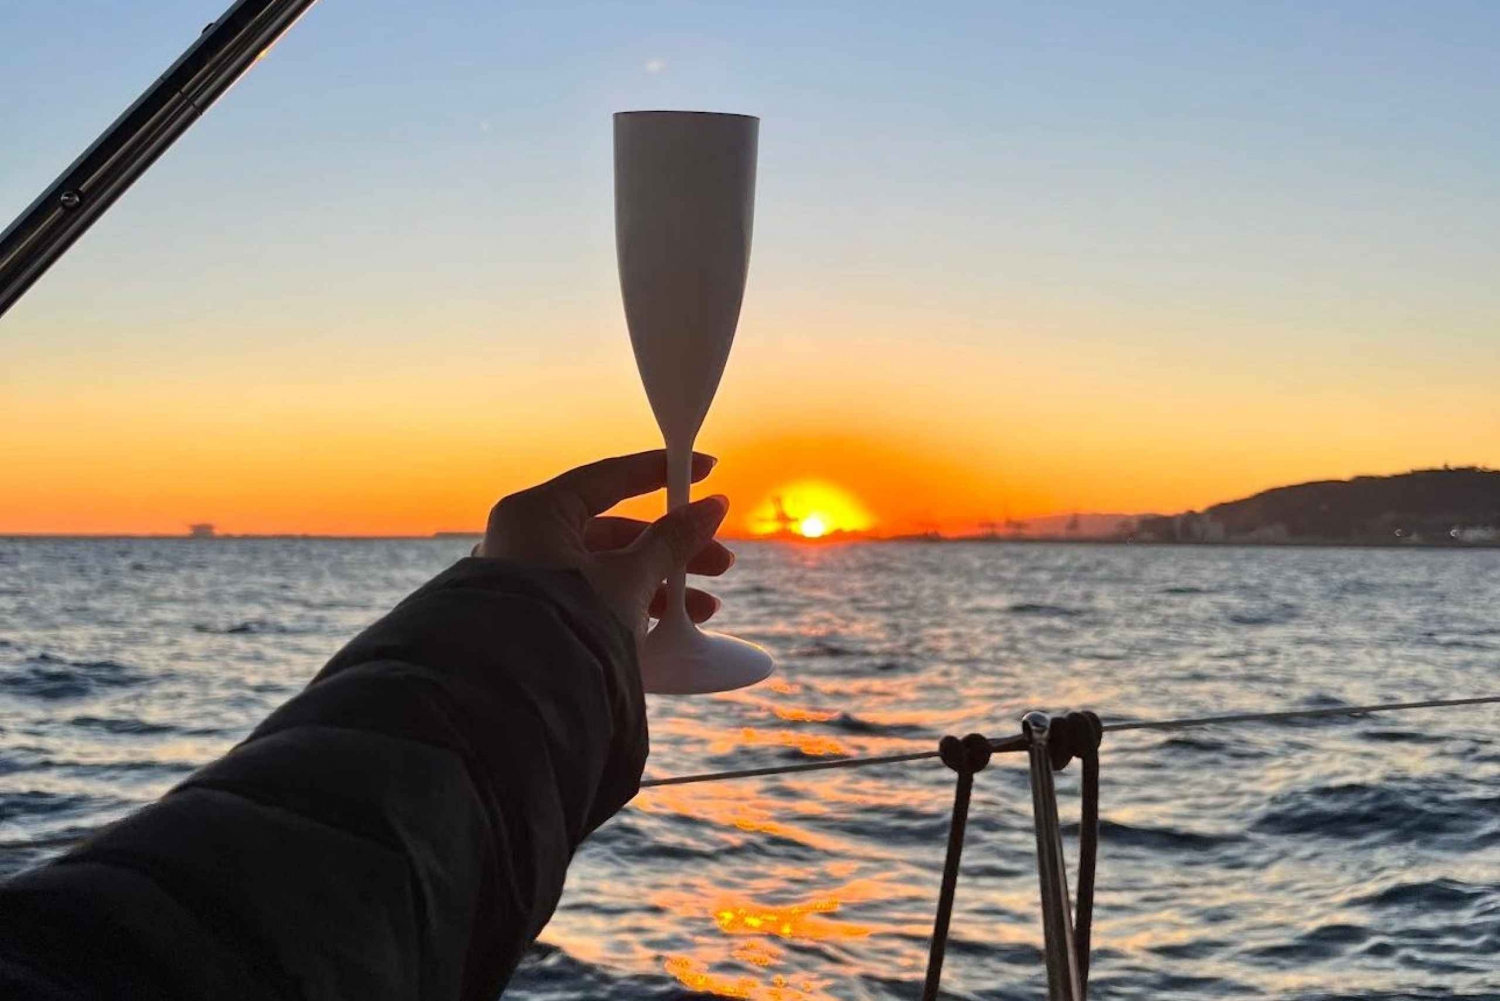 Barcelona: Sunset Zeilboot Cruise met Open Bar